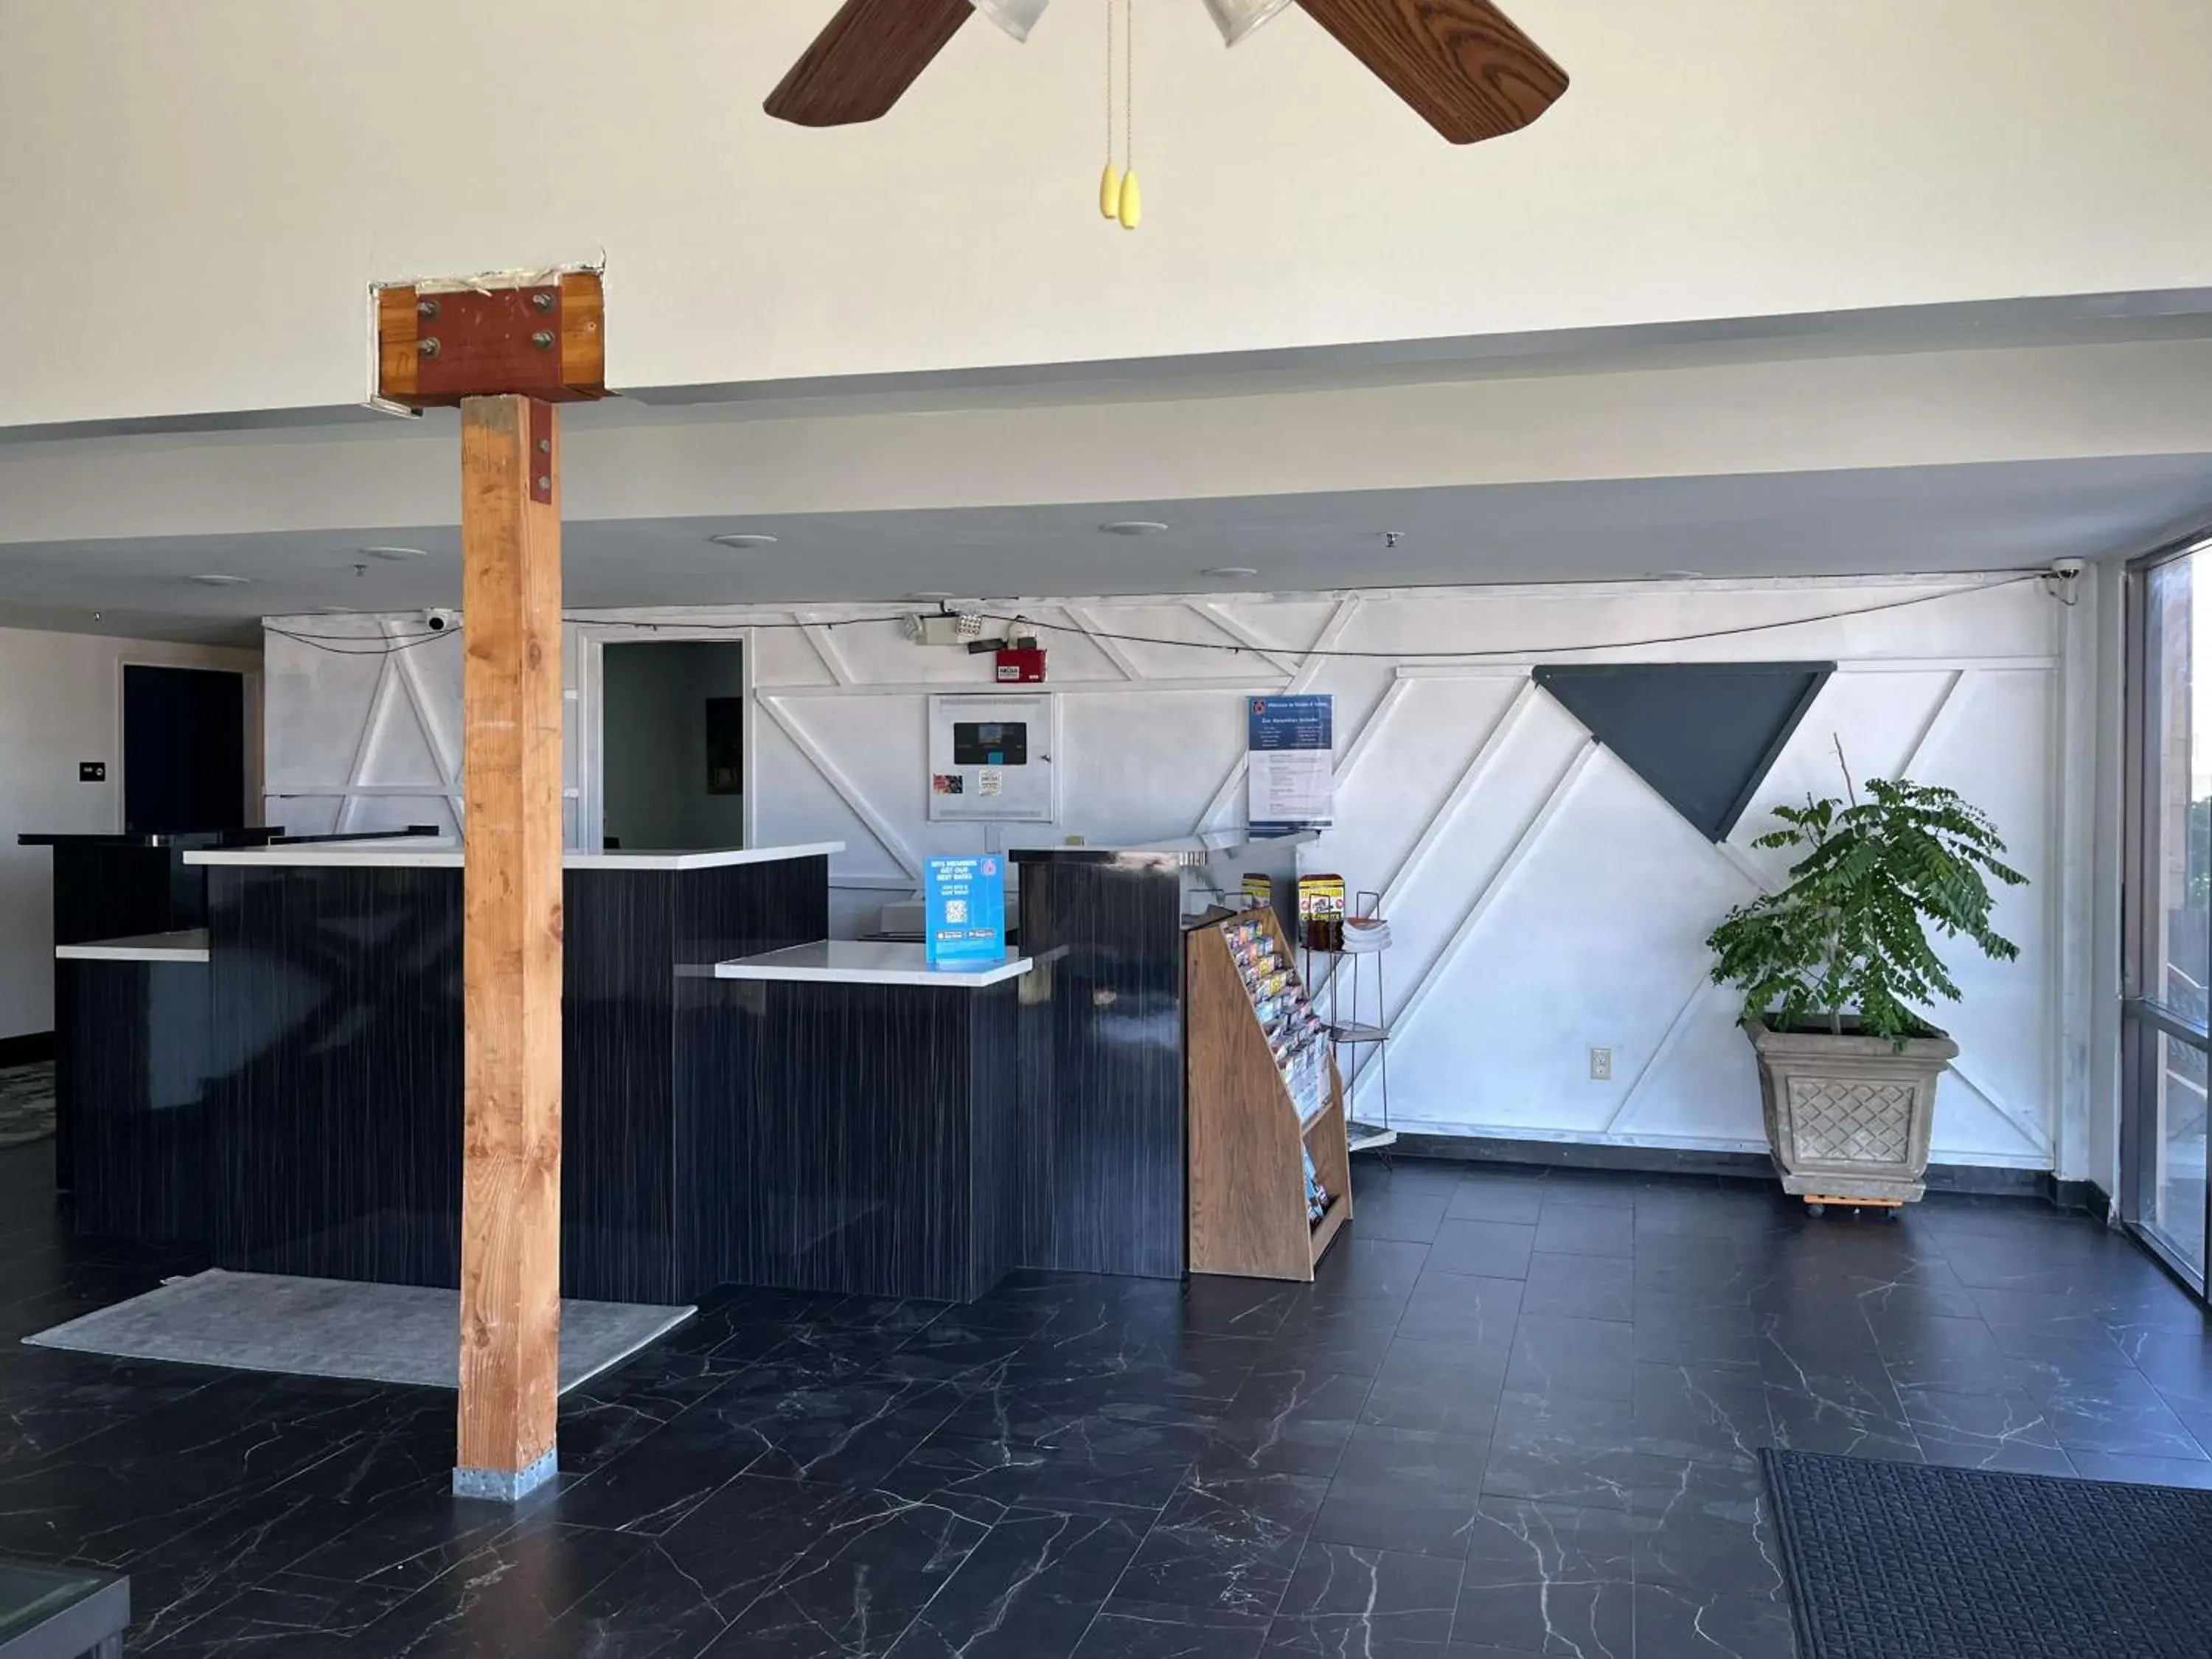 Lobby or reception in Studio 6 Suites Delano, CA